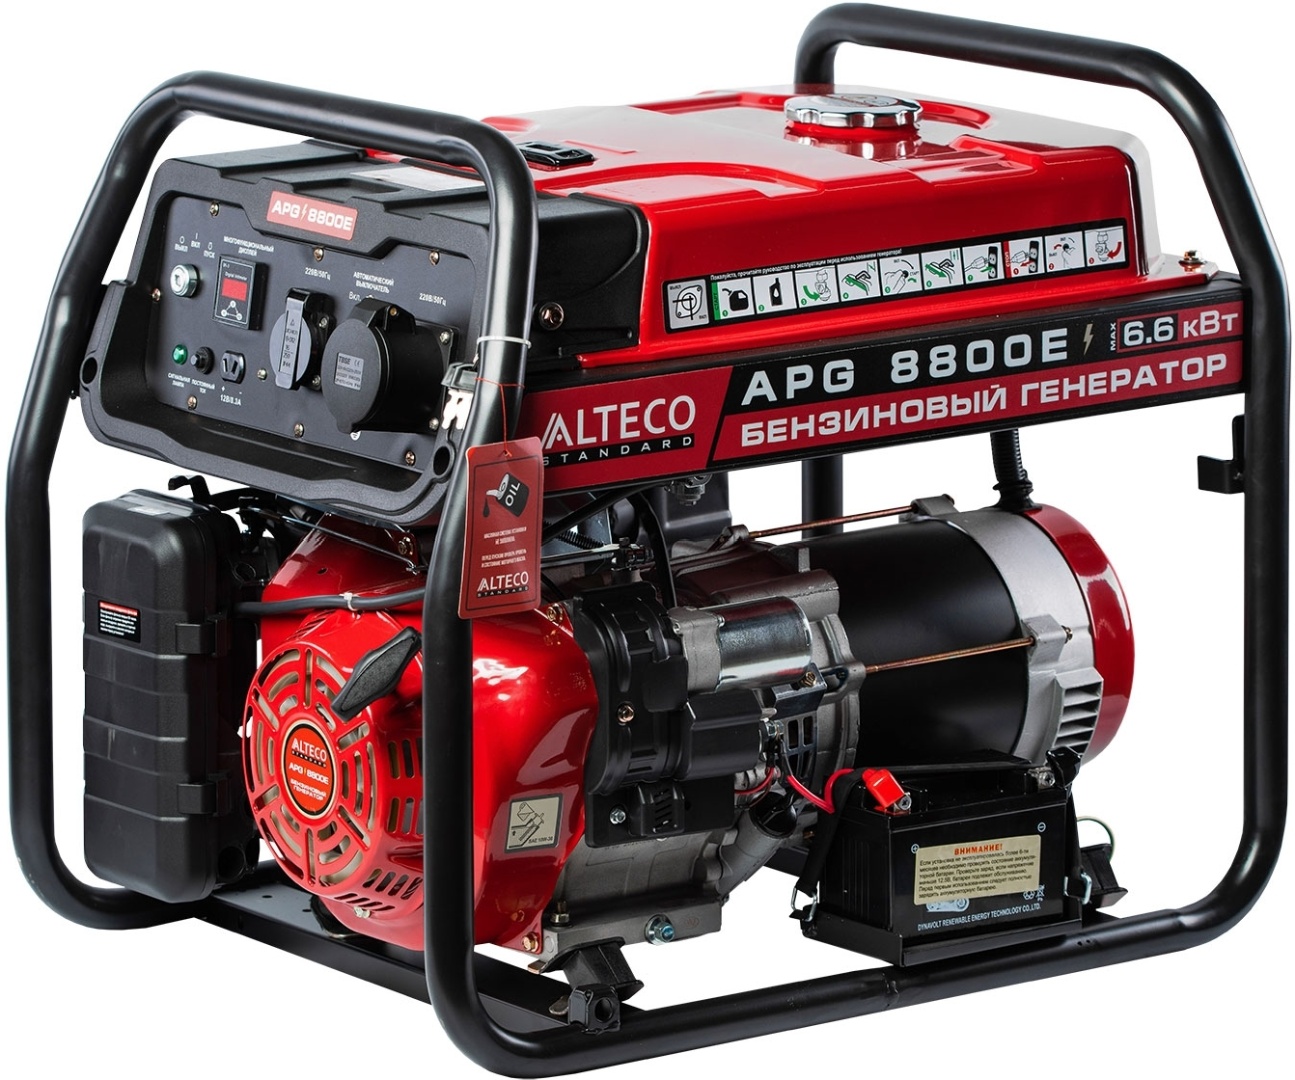 Купить Бензиновый генератор Apg 8800e N Alteco standard